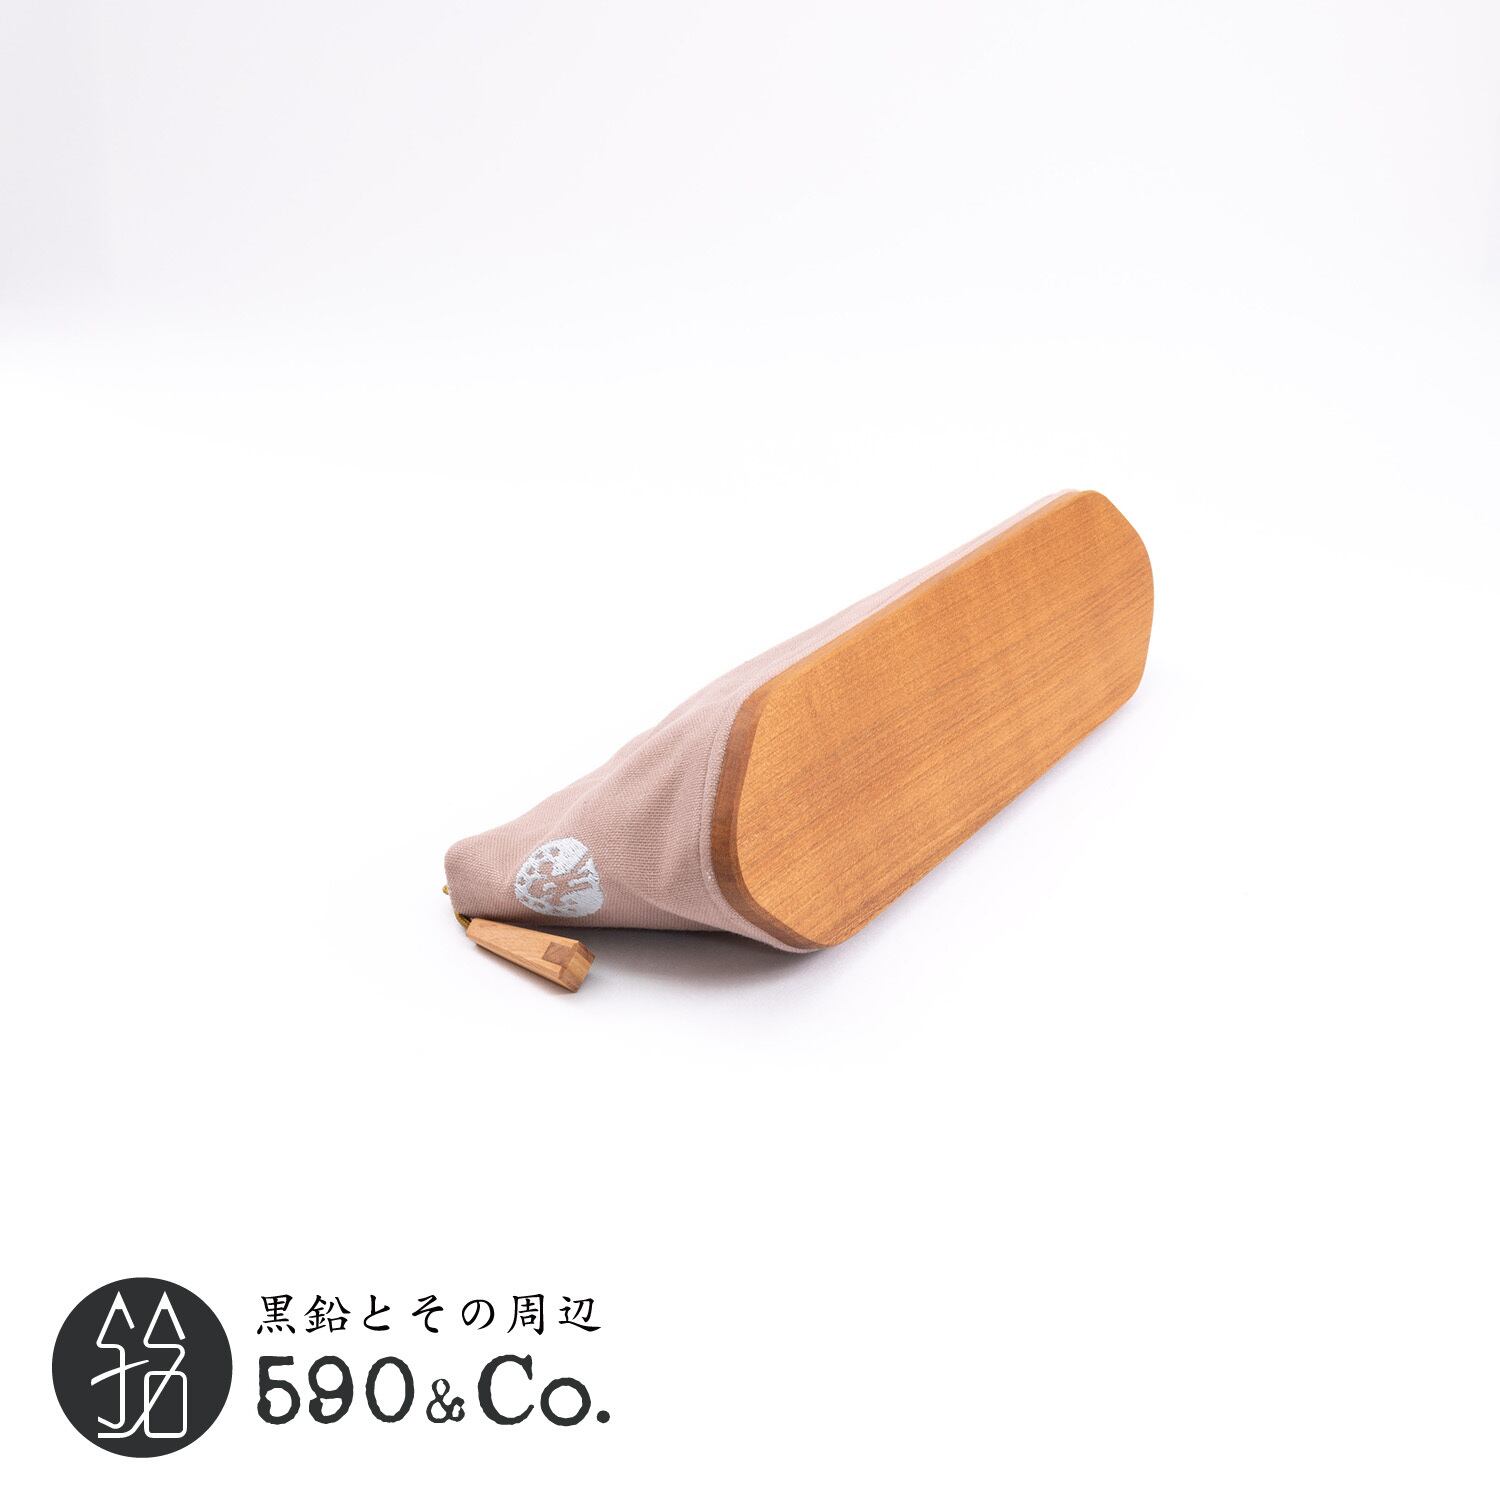 【キナリ木工所】別注 pencase 79 canvas × wood S (オールドピンク) 590Co.